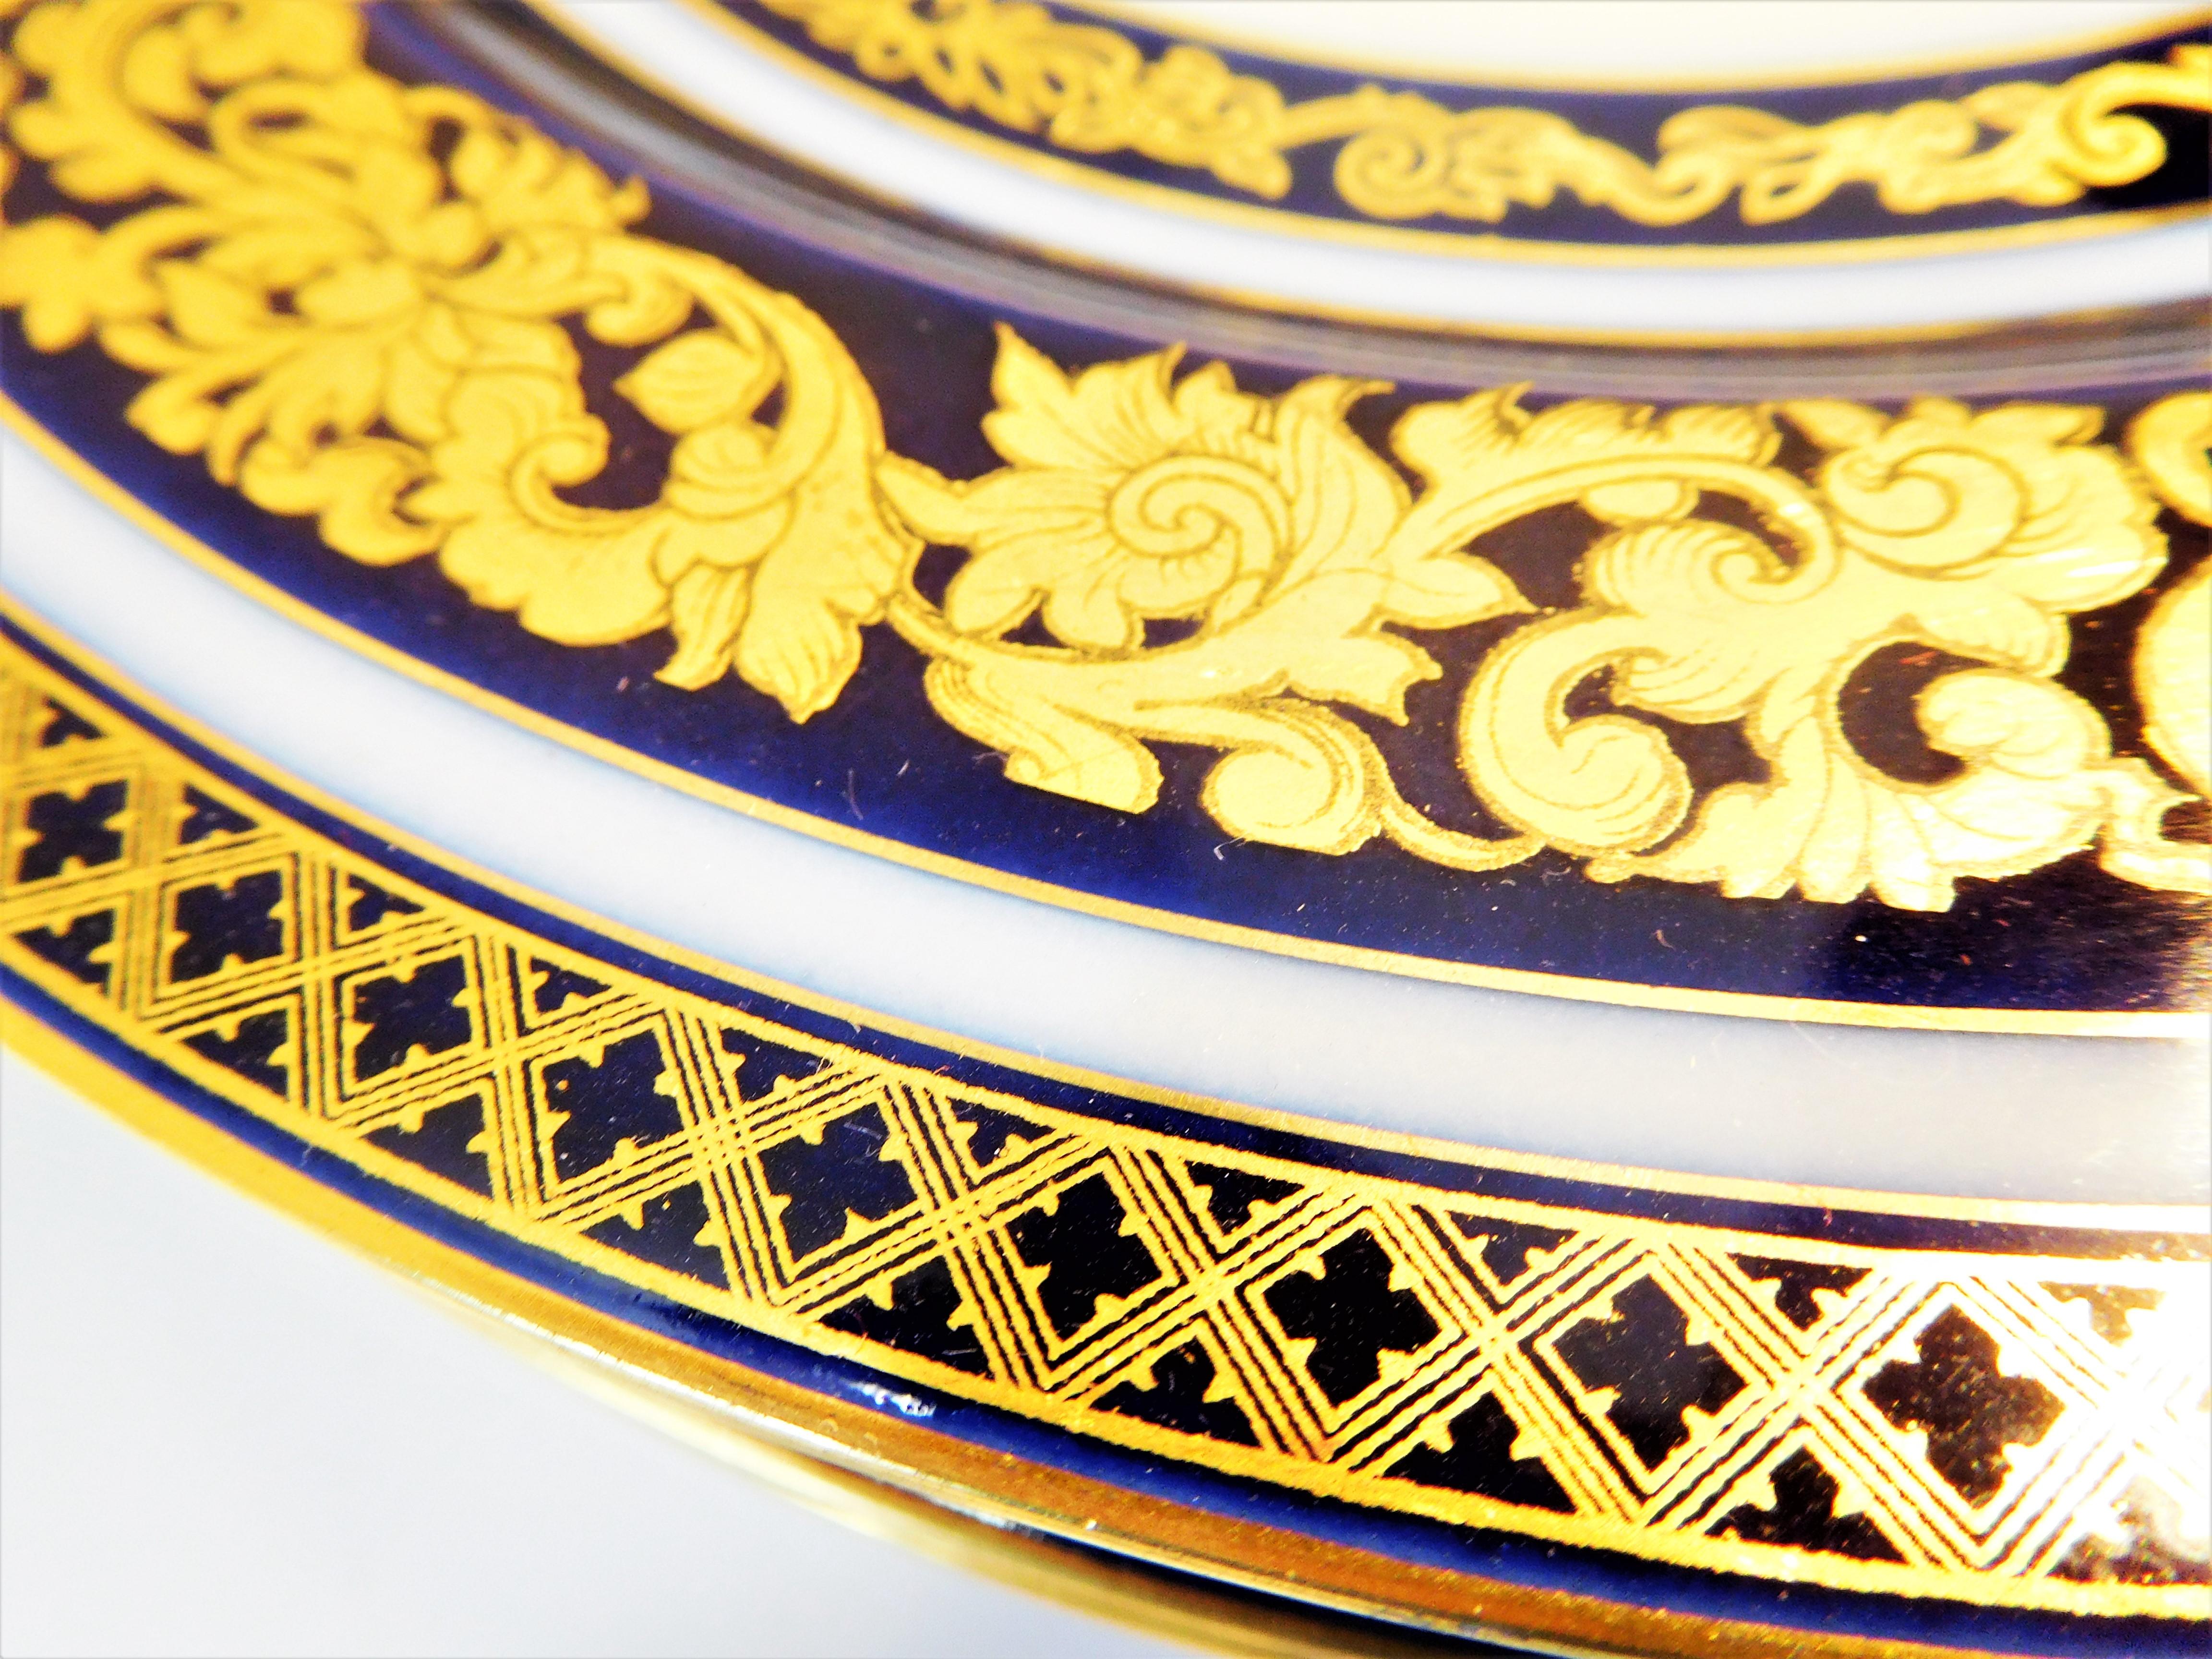 Set of 12 Tressemann & Vogt Cobalt & Gold Porcelain Dinner Plates, France, 1910 For Sale 6